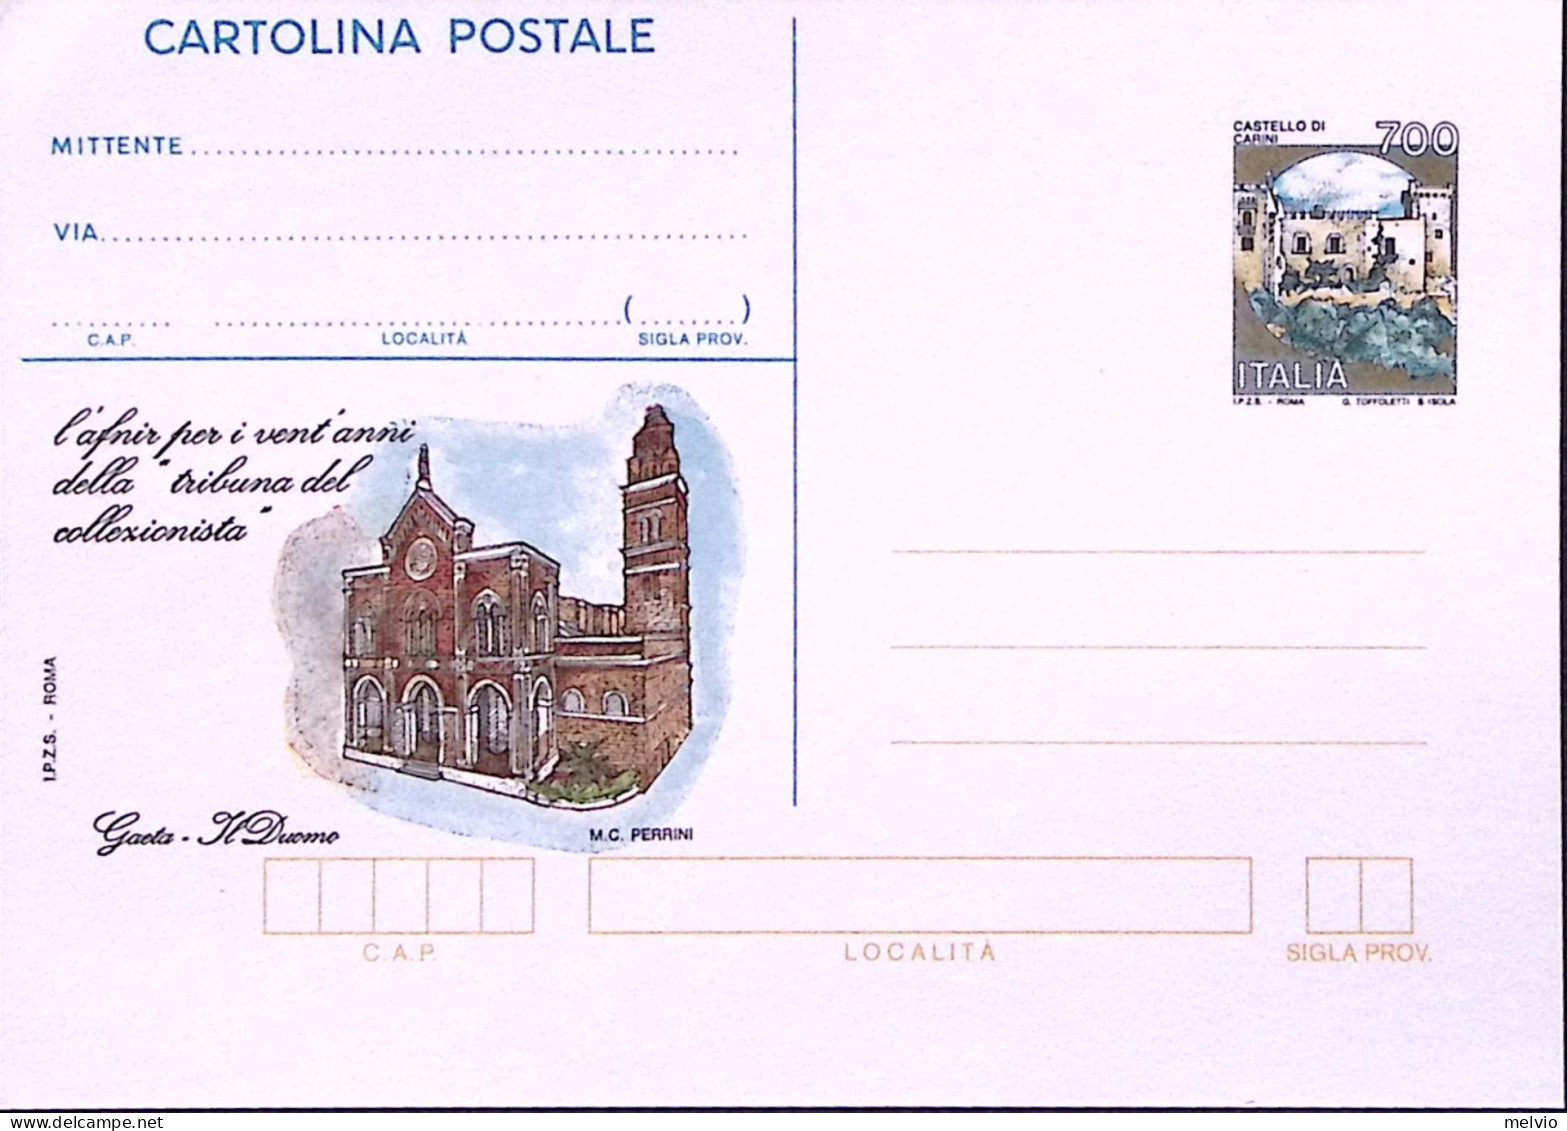 1993-Cartolina Postale Sopr. IPZS La Tribuna Del Collezionista, Nuova - Ganzsachen